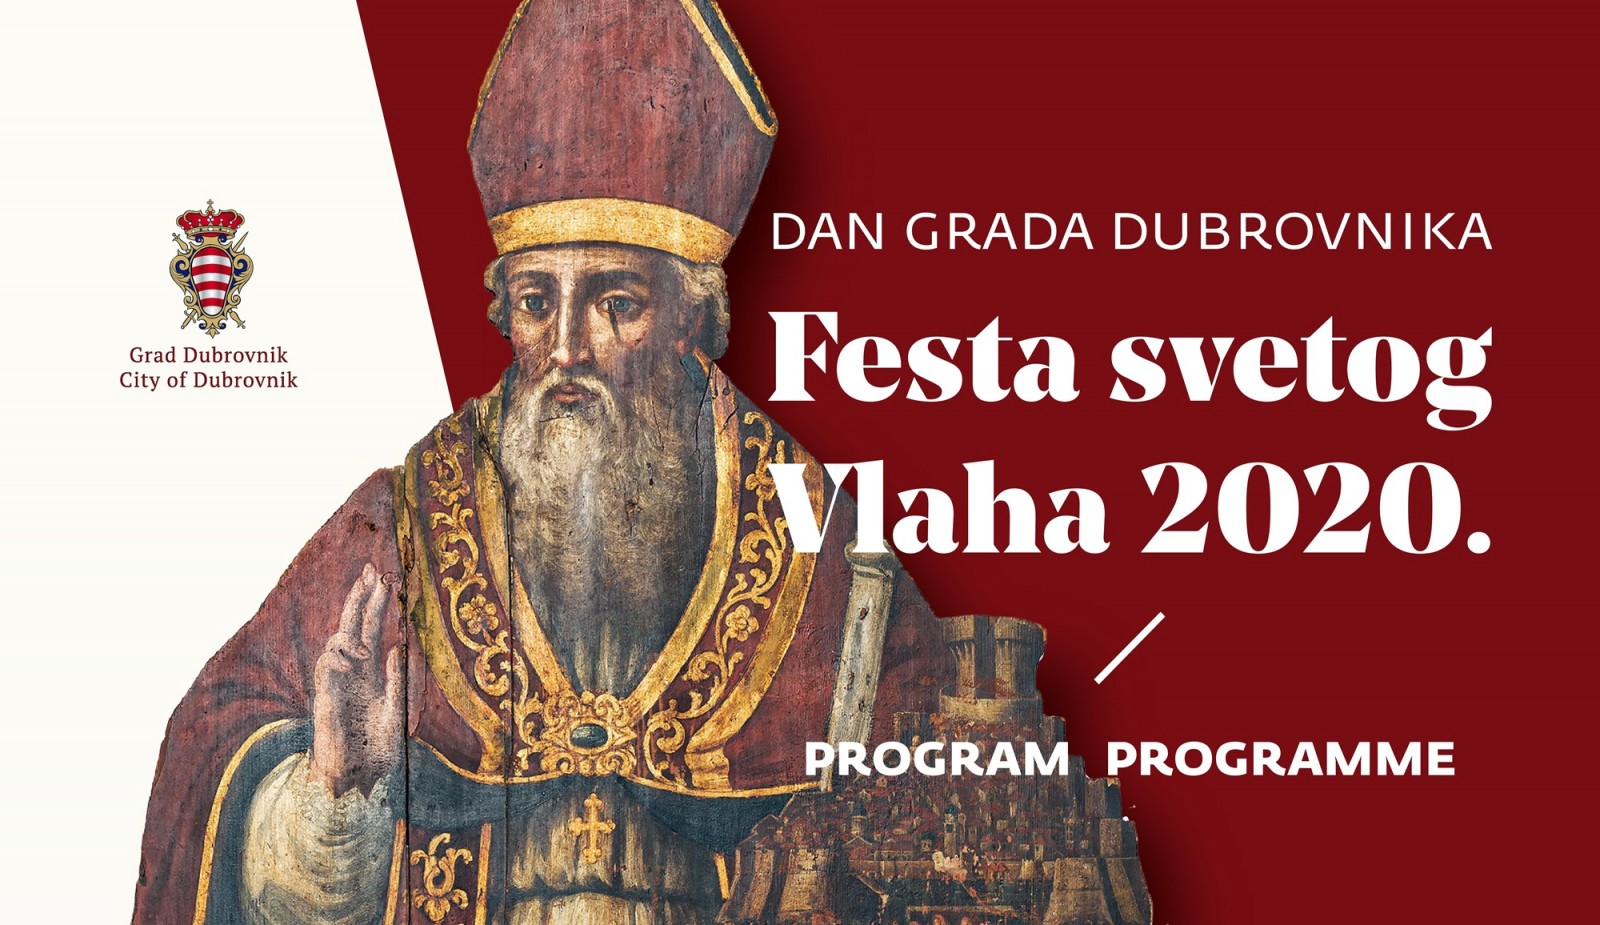 Festa svetog Vlaha 2020 - Program